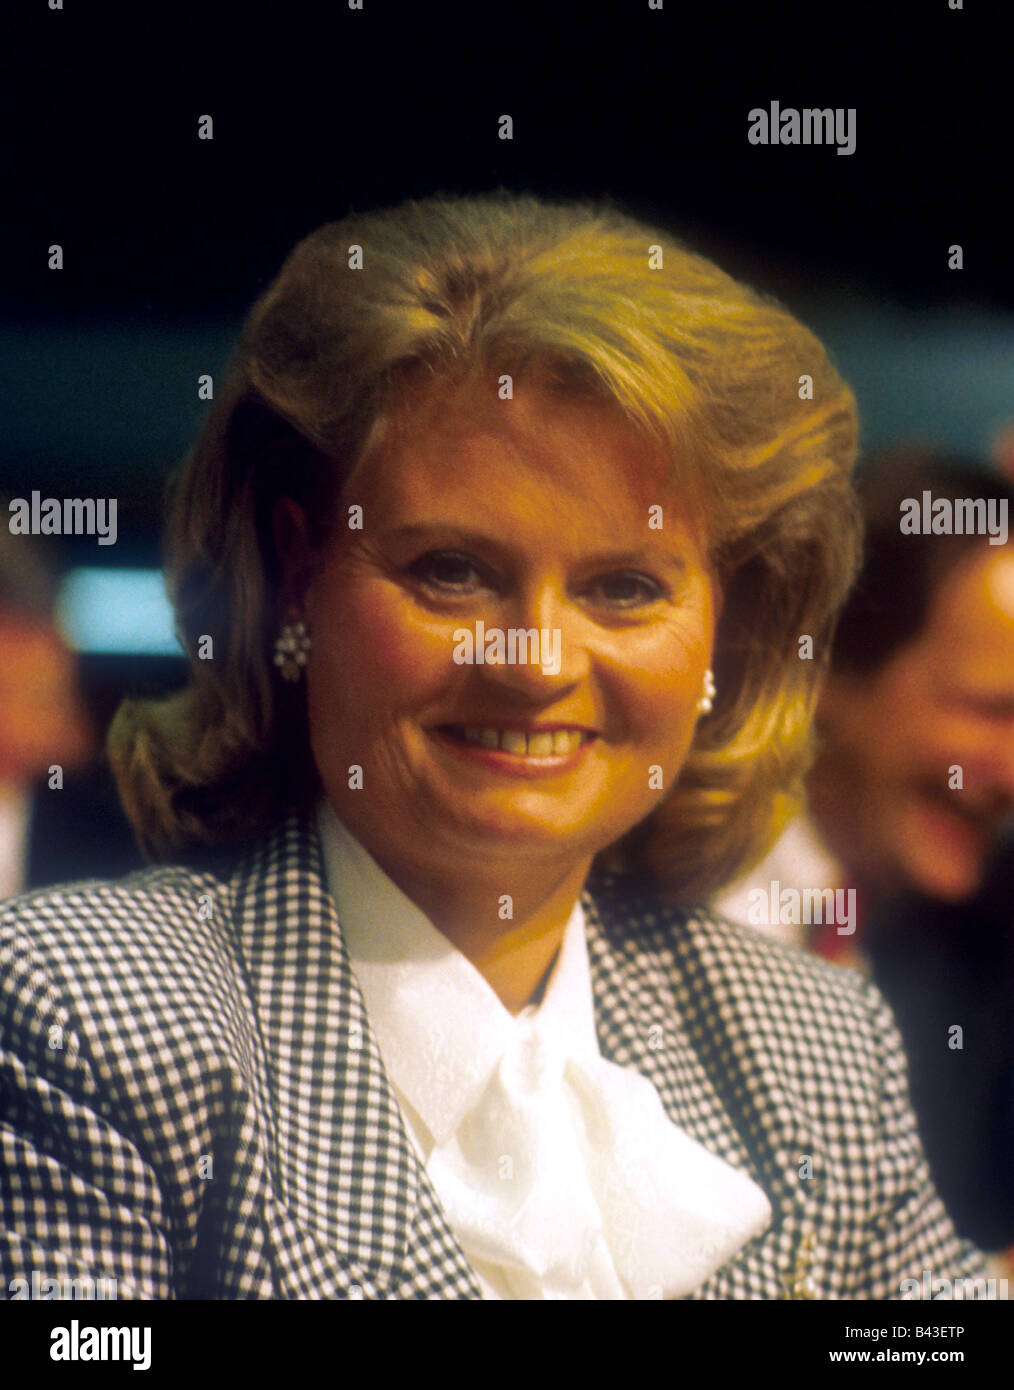 Kohl, Helmut, * 3.4.1930, German politician (CDU), his wife Hannelore, portrait, early 1980s, Stock Photo